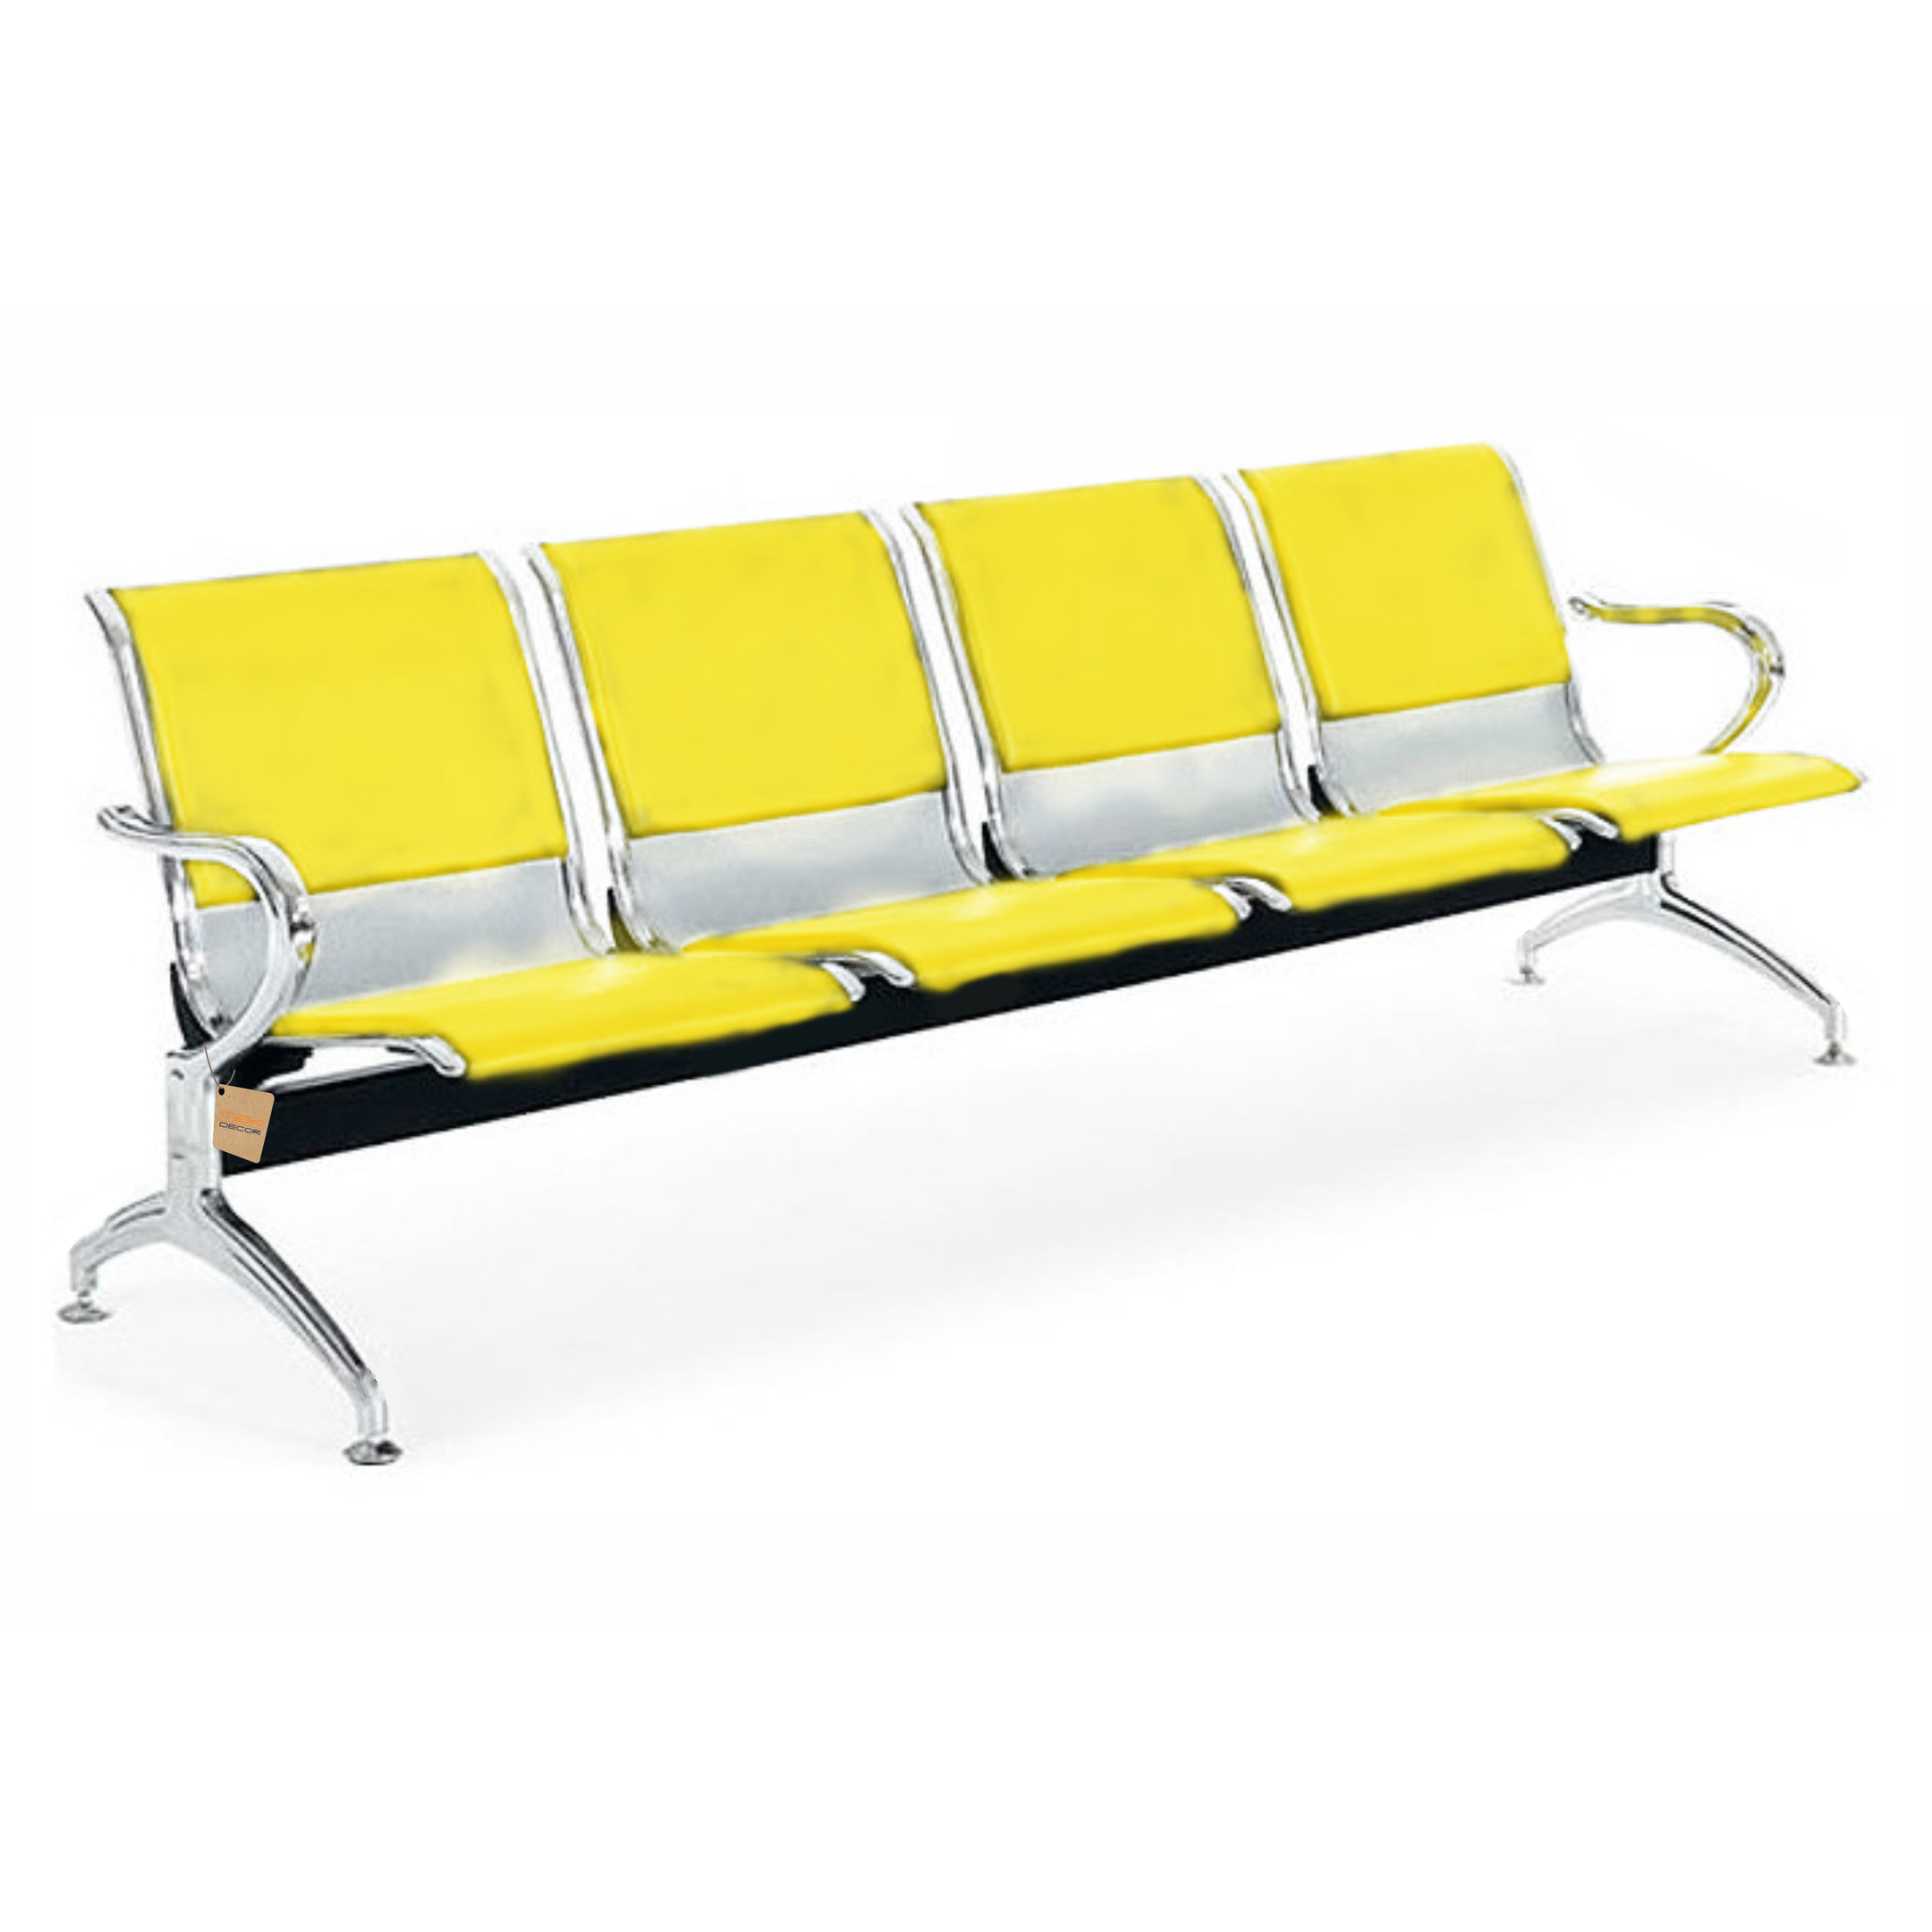 Cadeira Longarina 4 Lugares Com Estofado Colors: Amarelo - 1